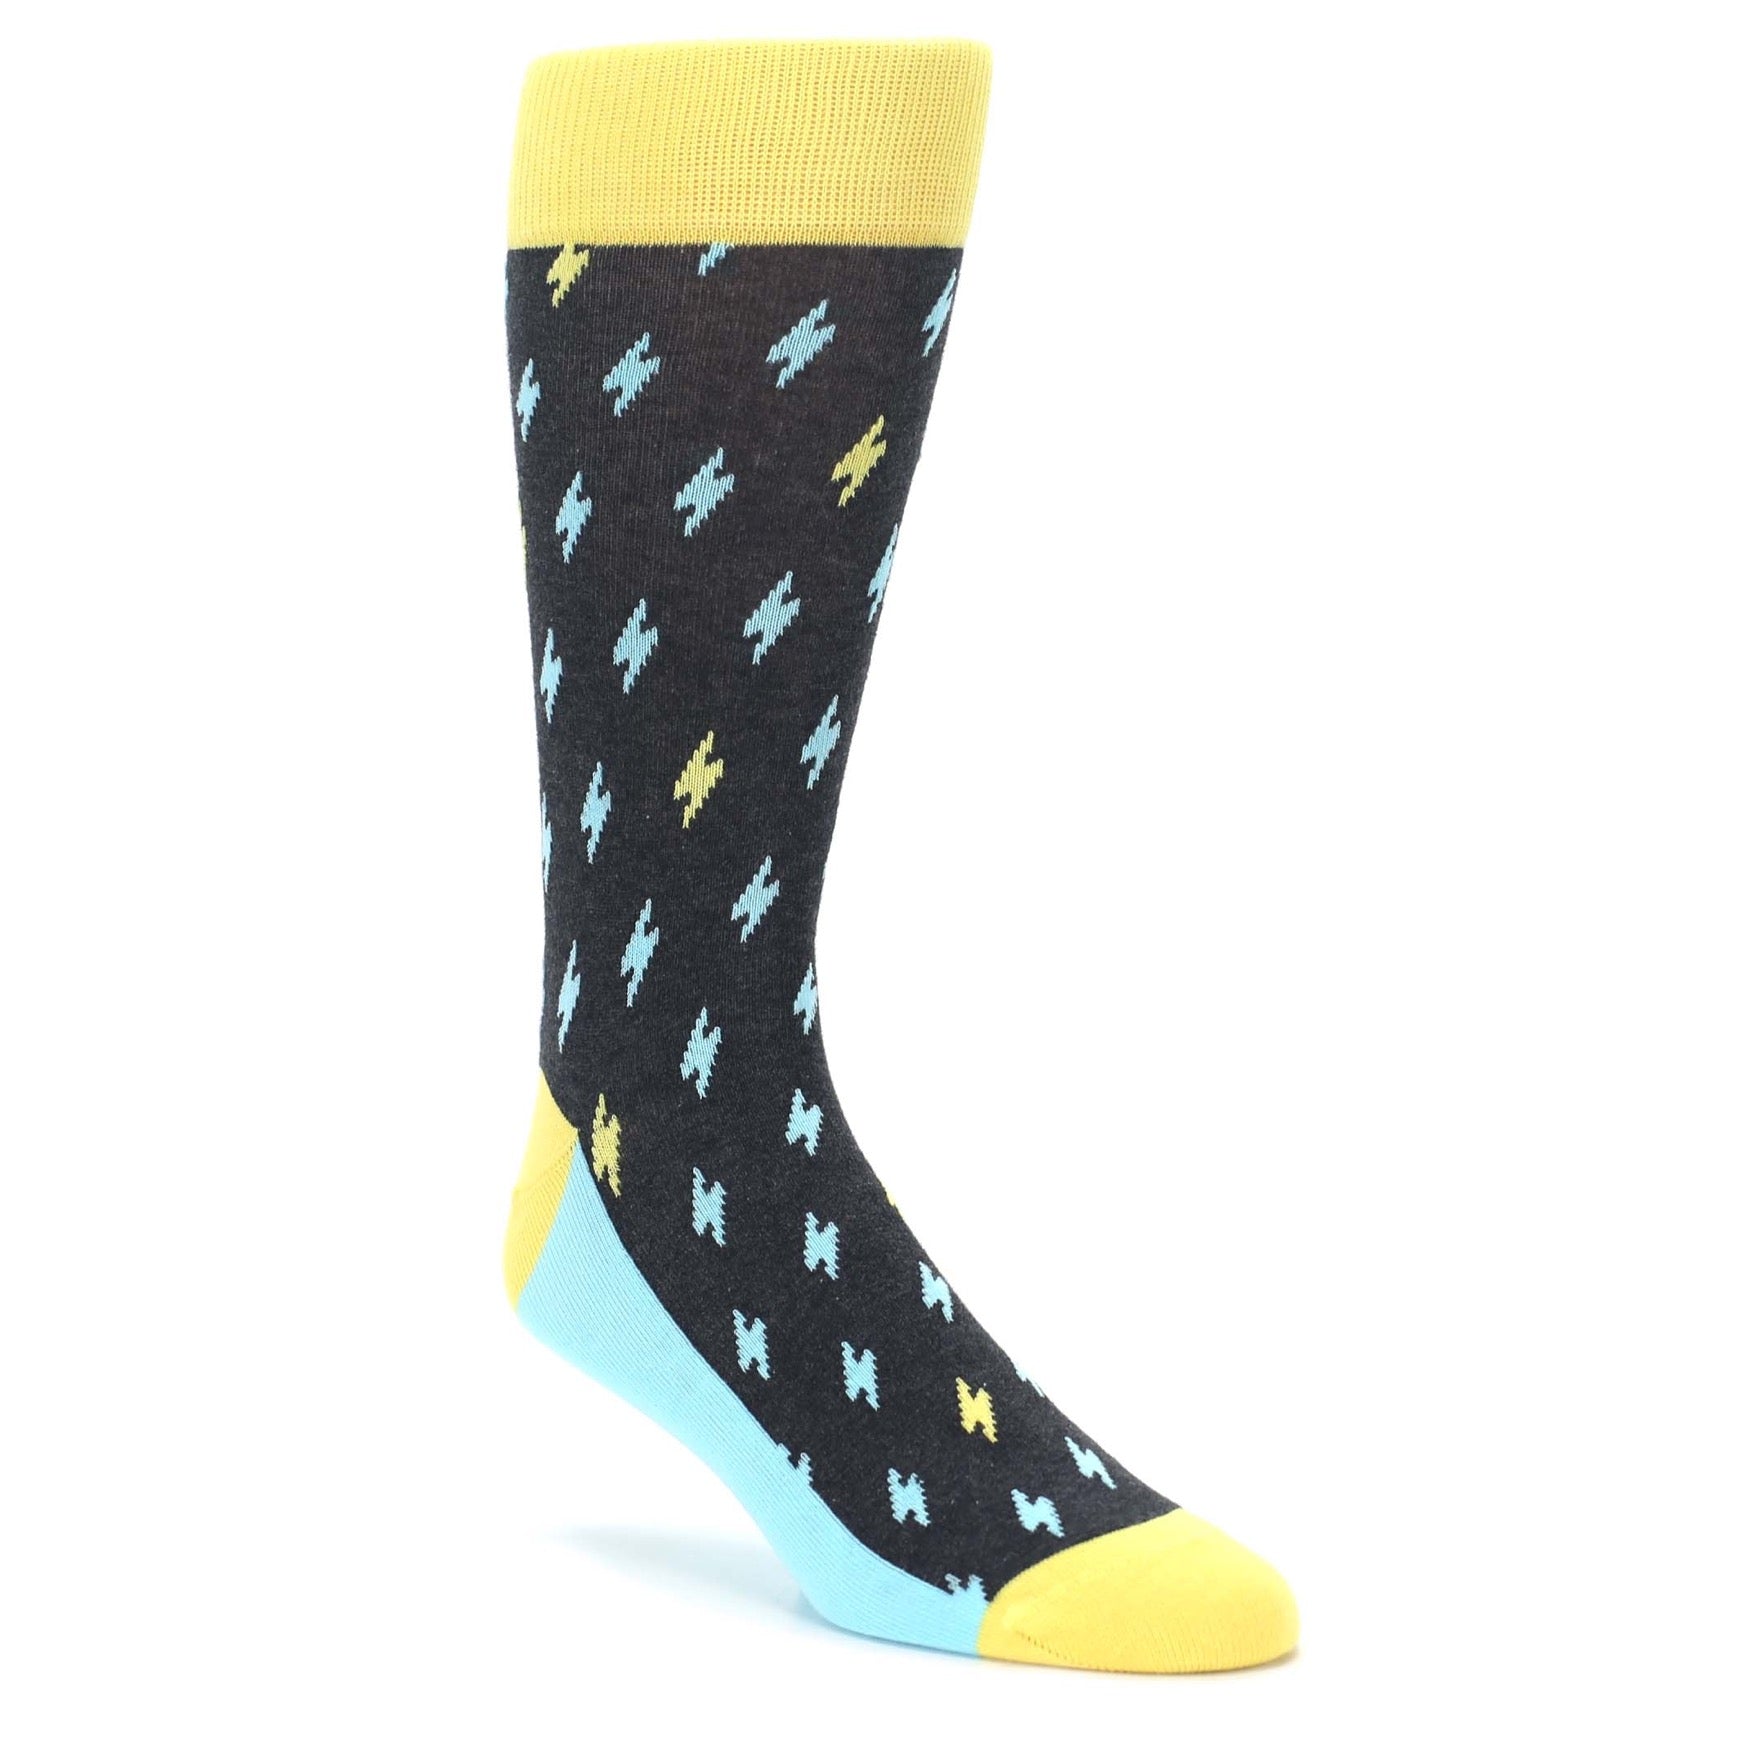 Lighting Bolt Socks for Men by Statement Sockwear